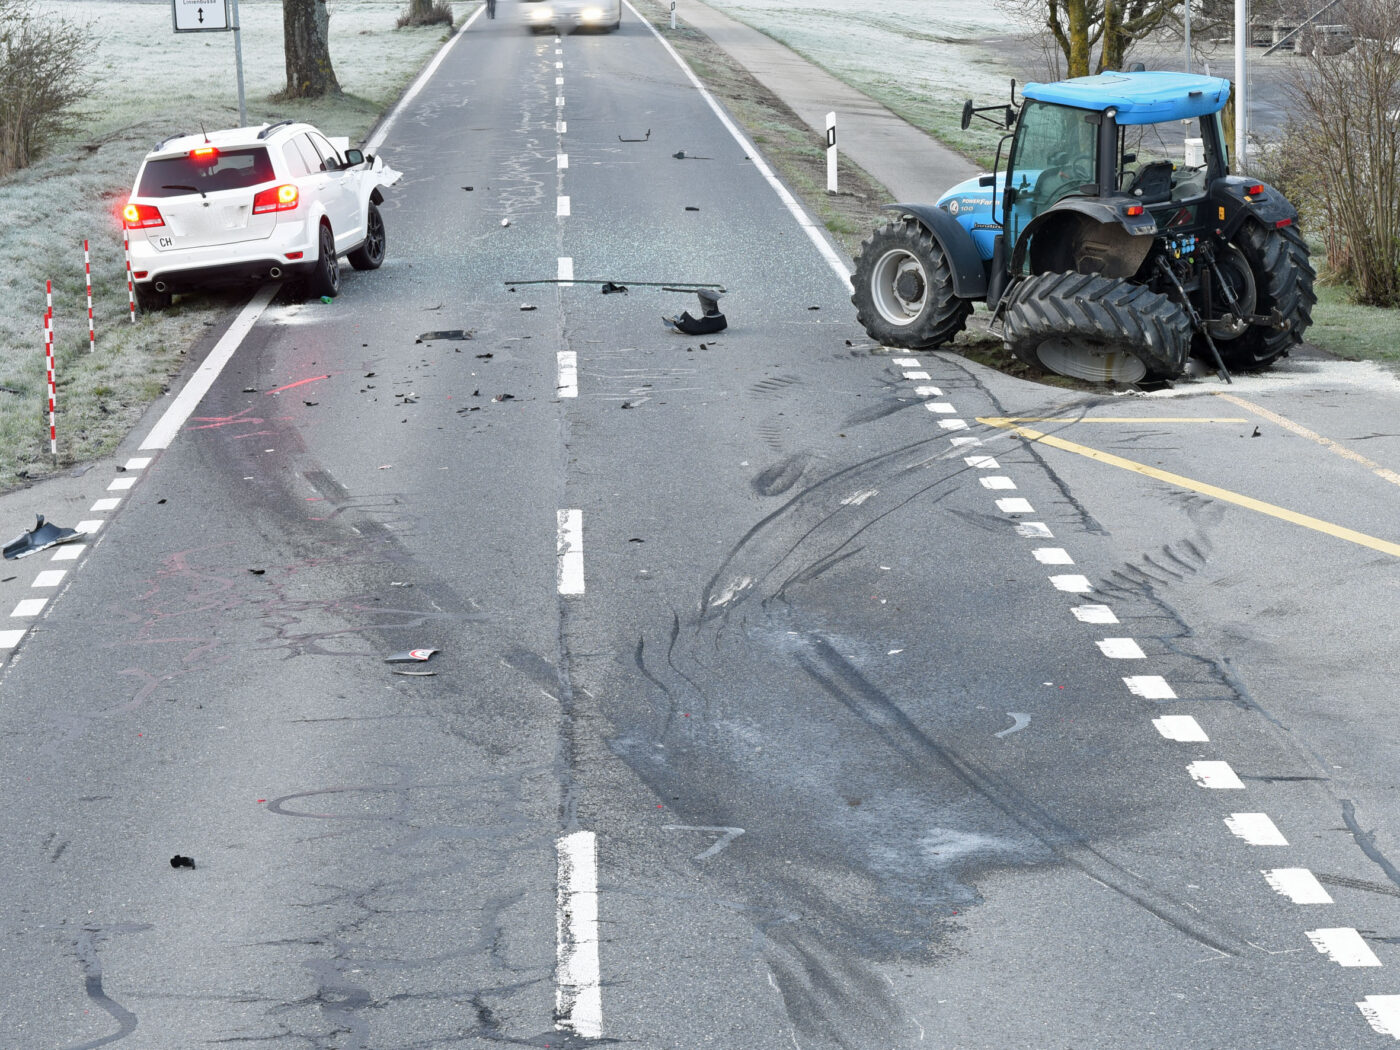 Kollision zwischen Auto und Traktor ohne Verletzte – Polizei sucht Zeugen